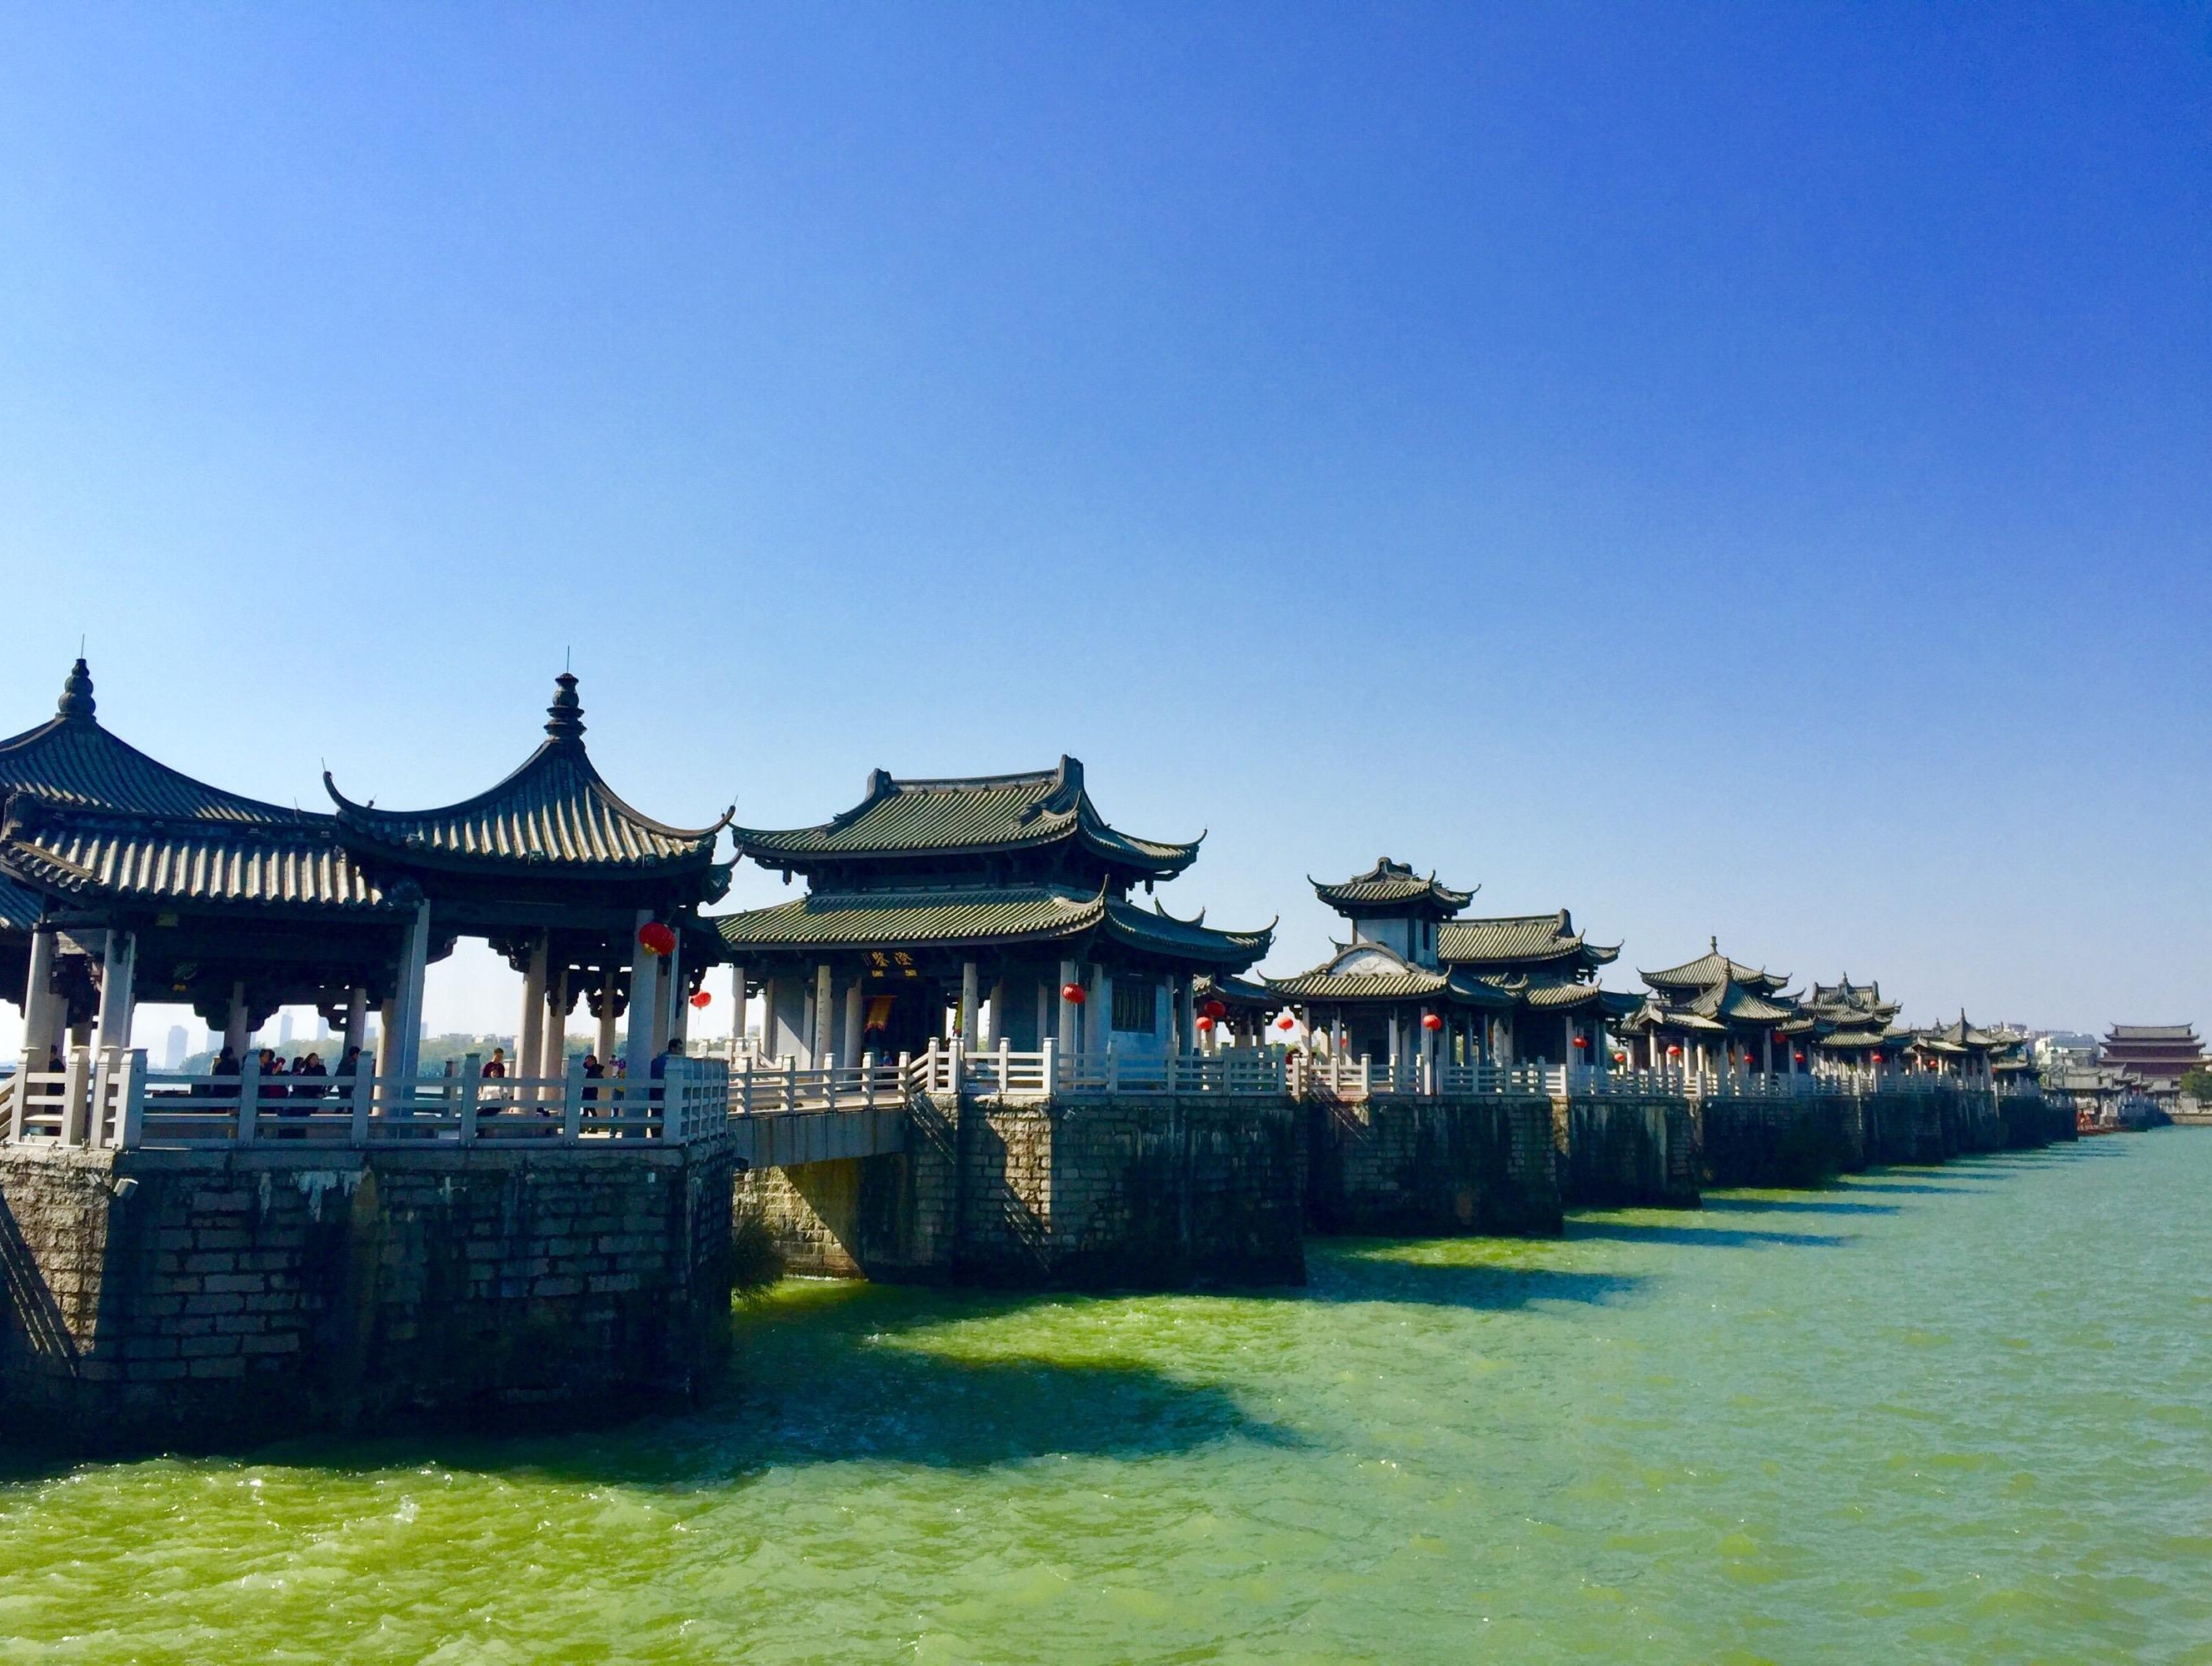 中国十大名桥(古桥)  第一名:卢沟桥  北京丰台(永定河) 第二名